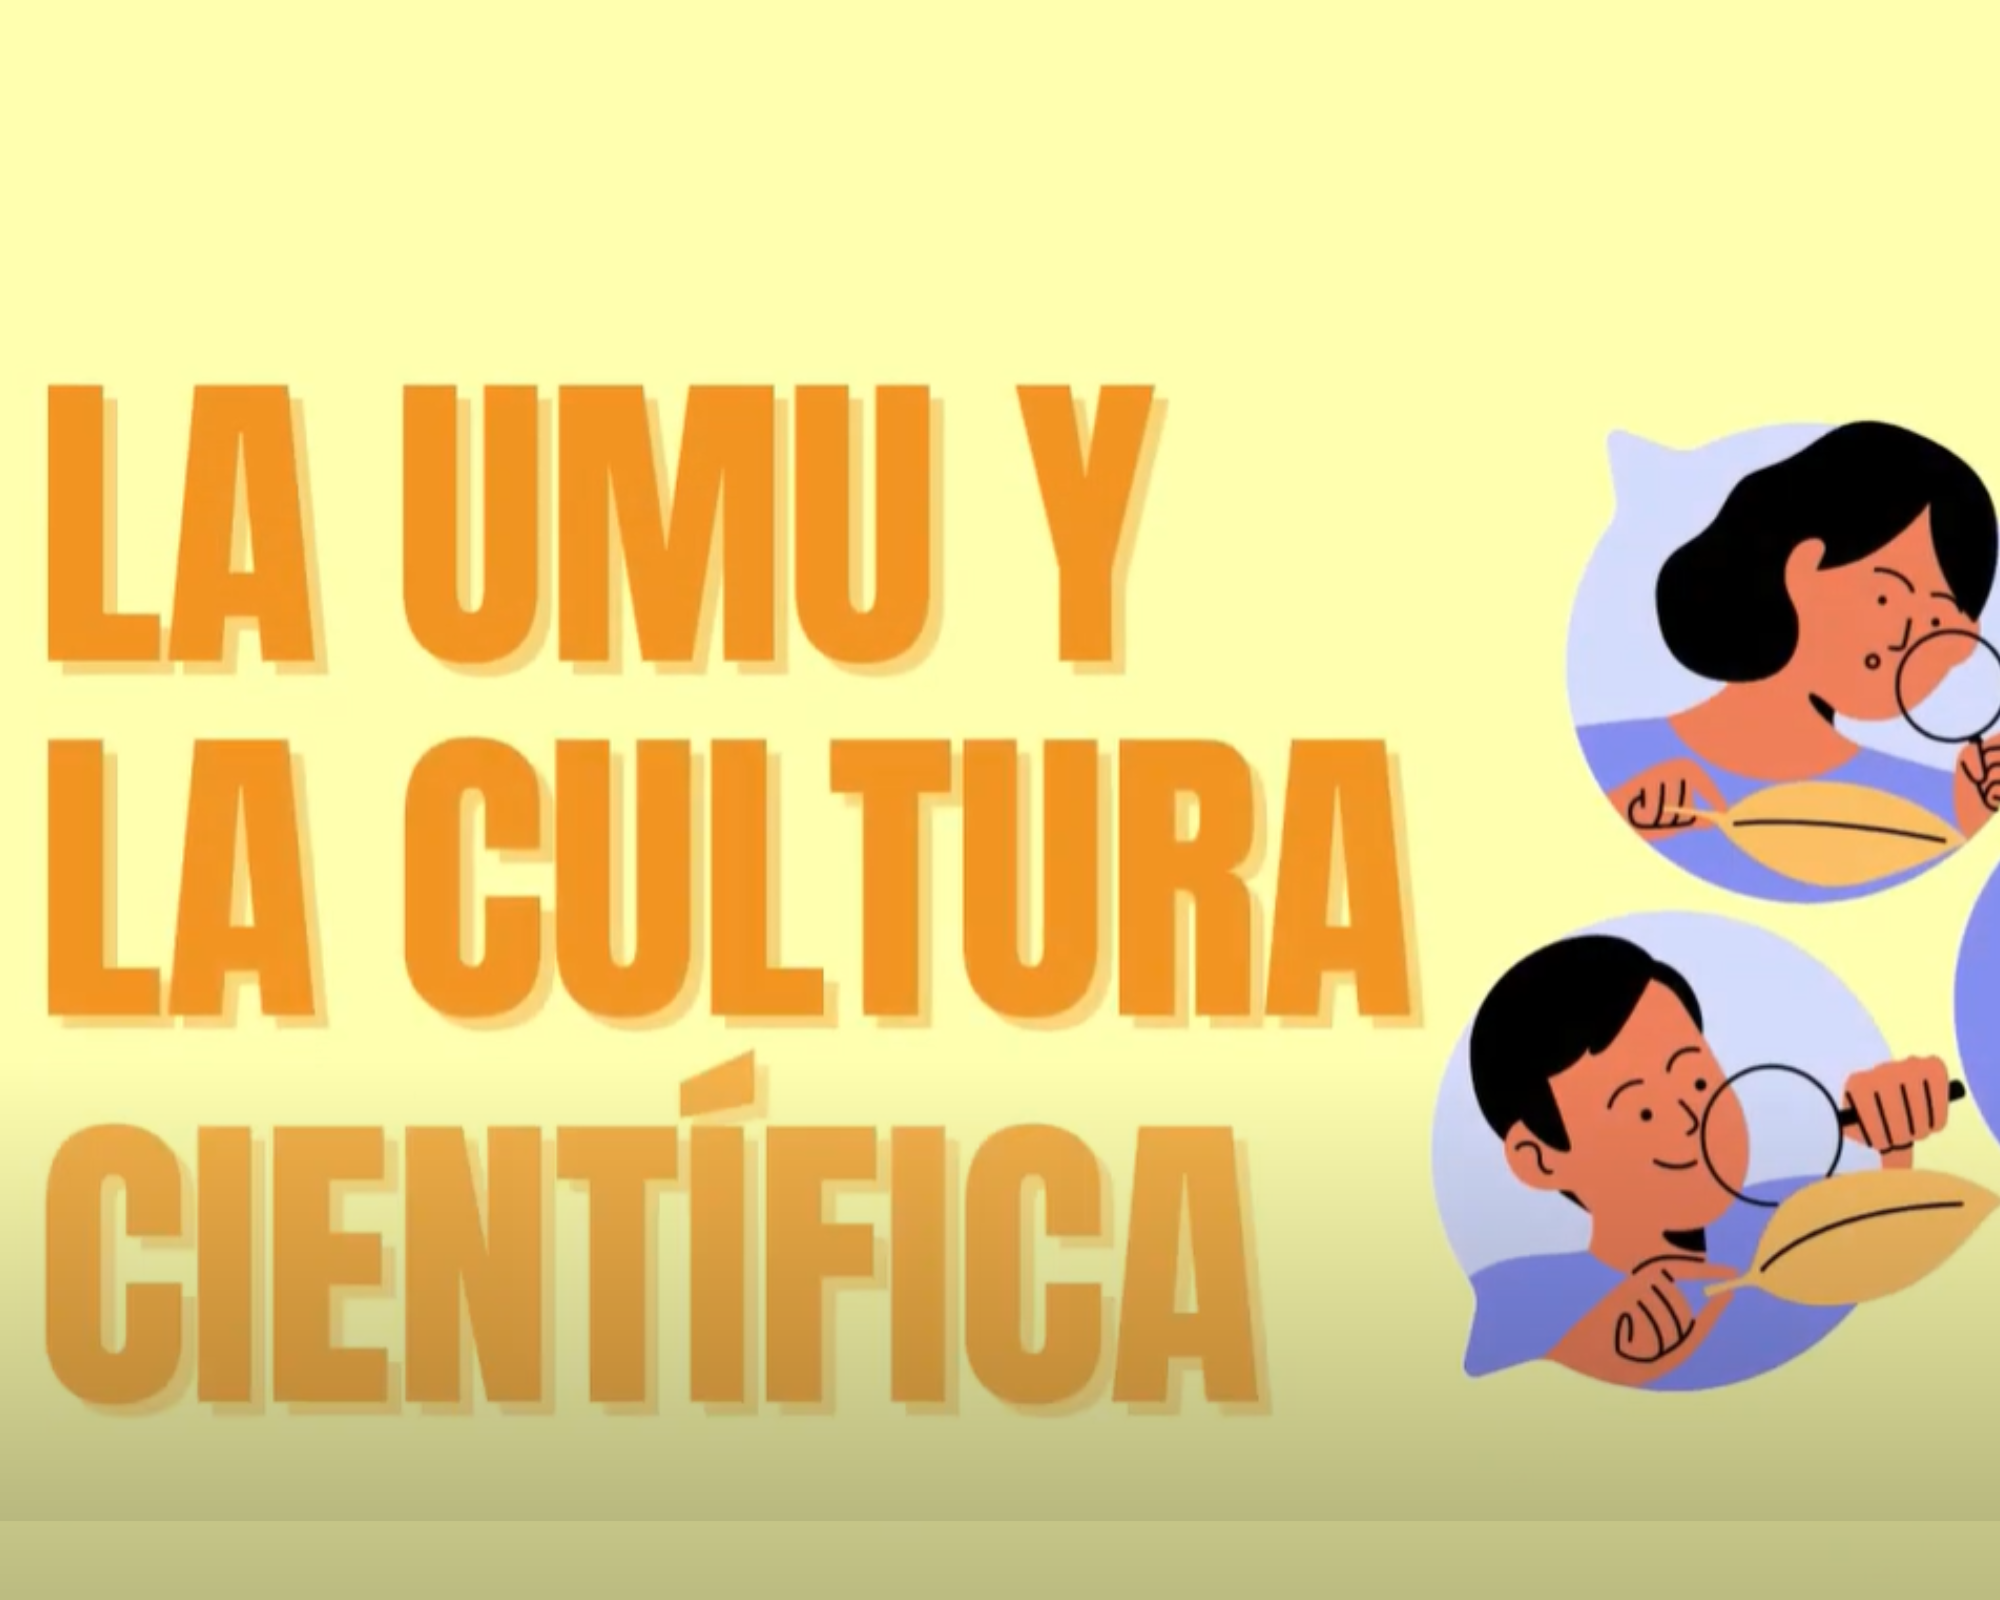 UMU y la Cultura Científica